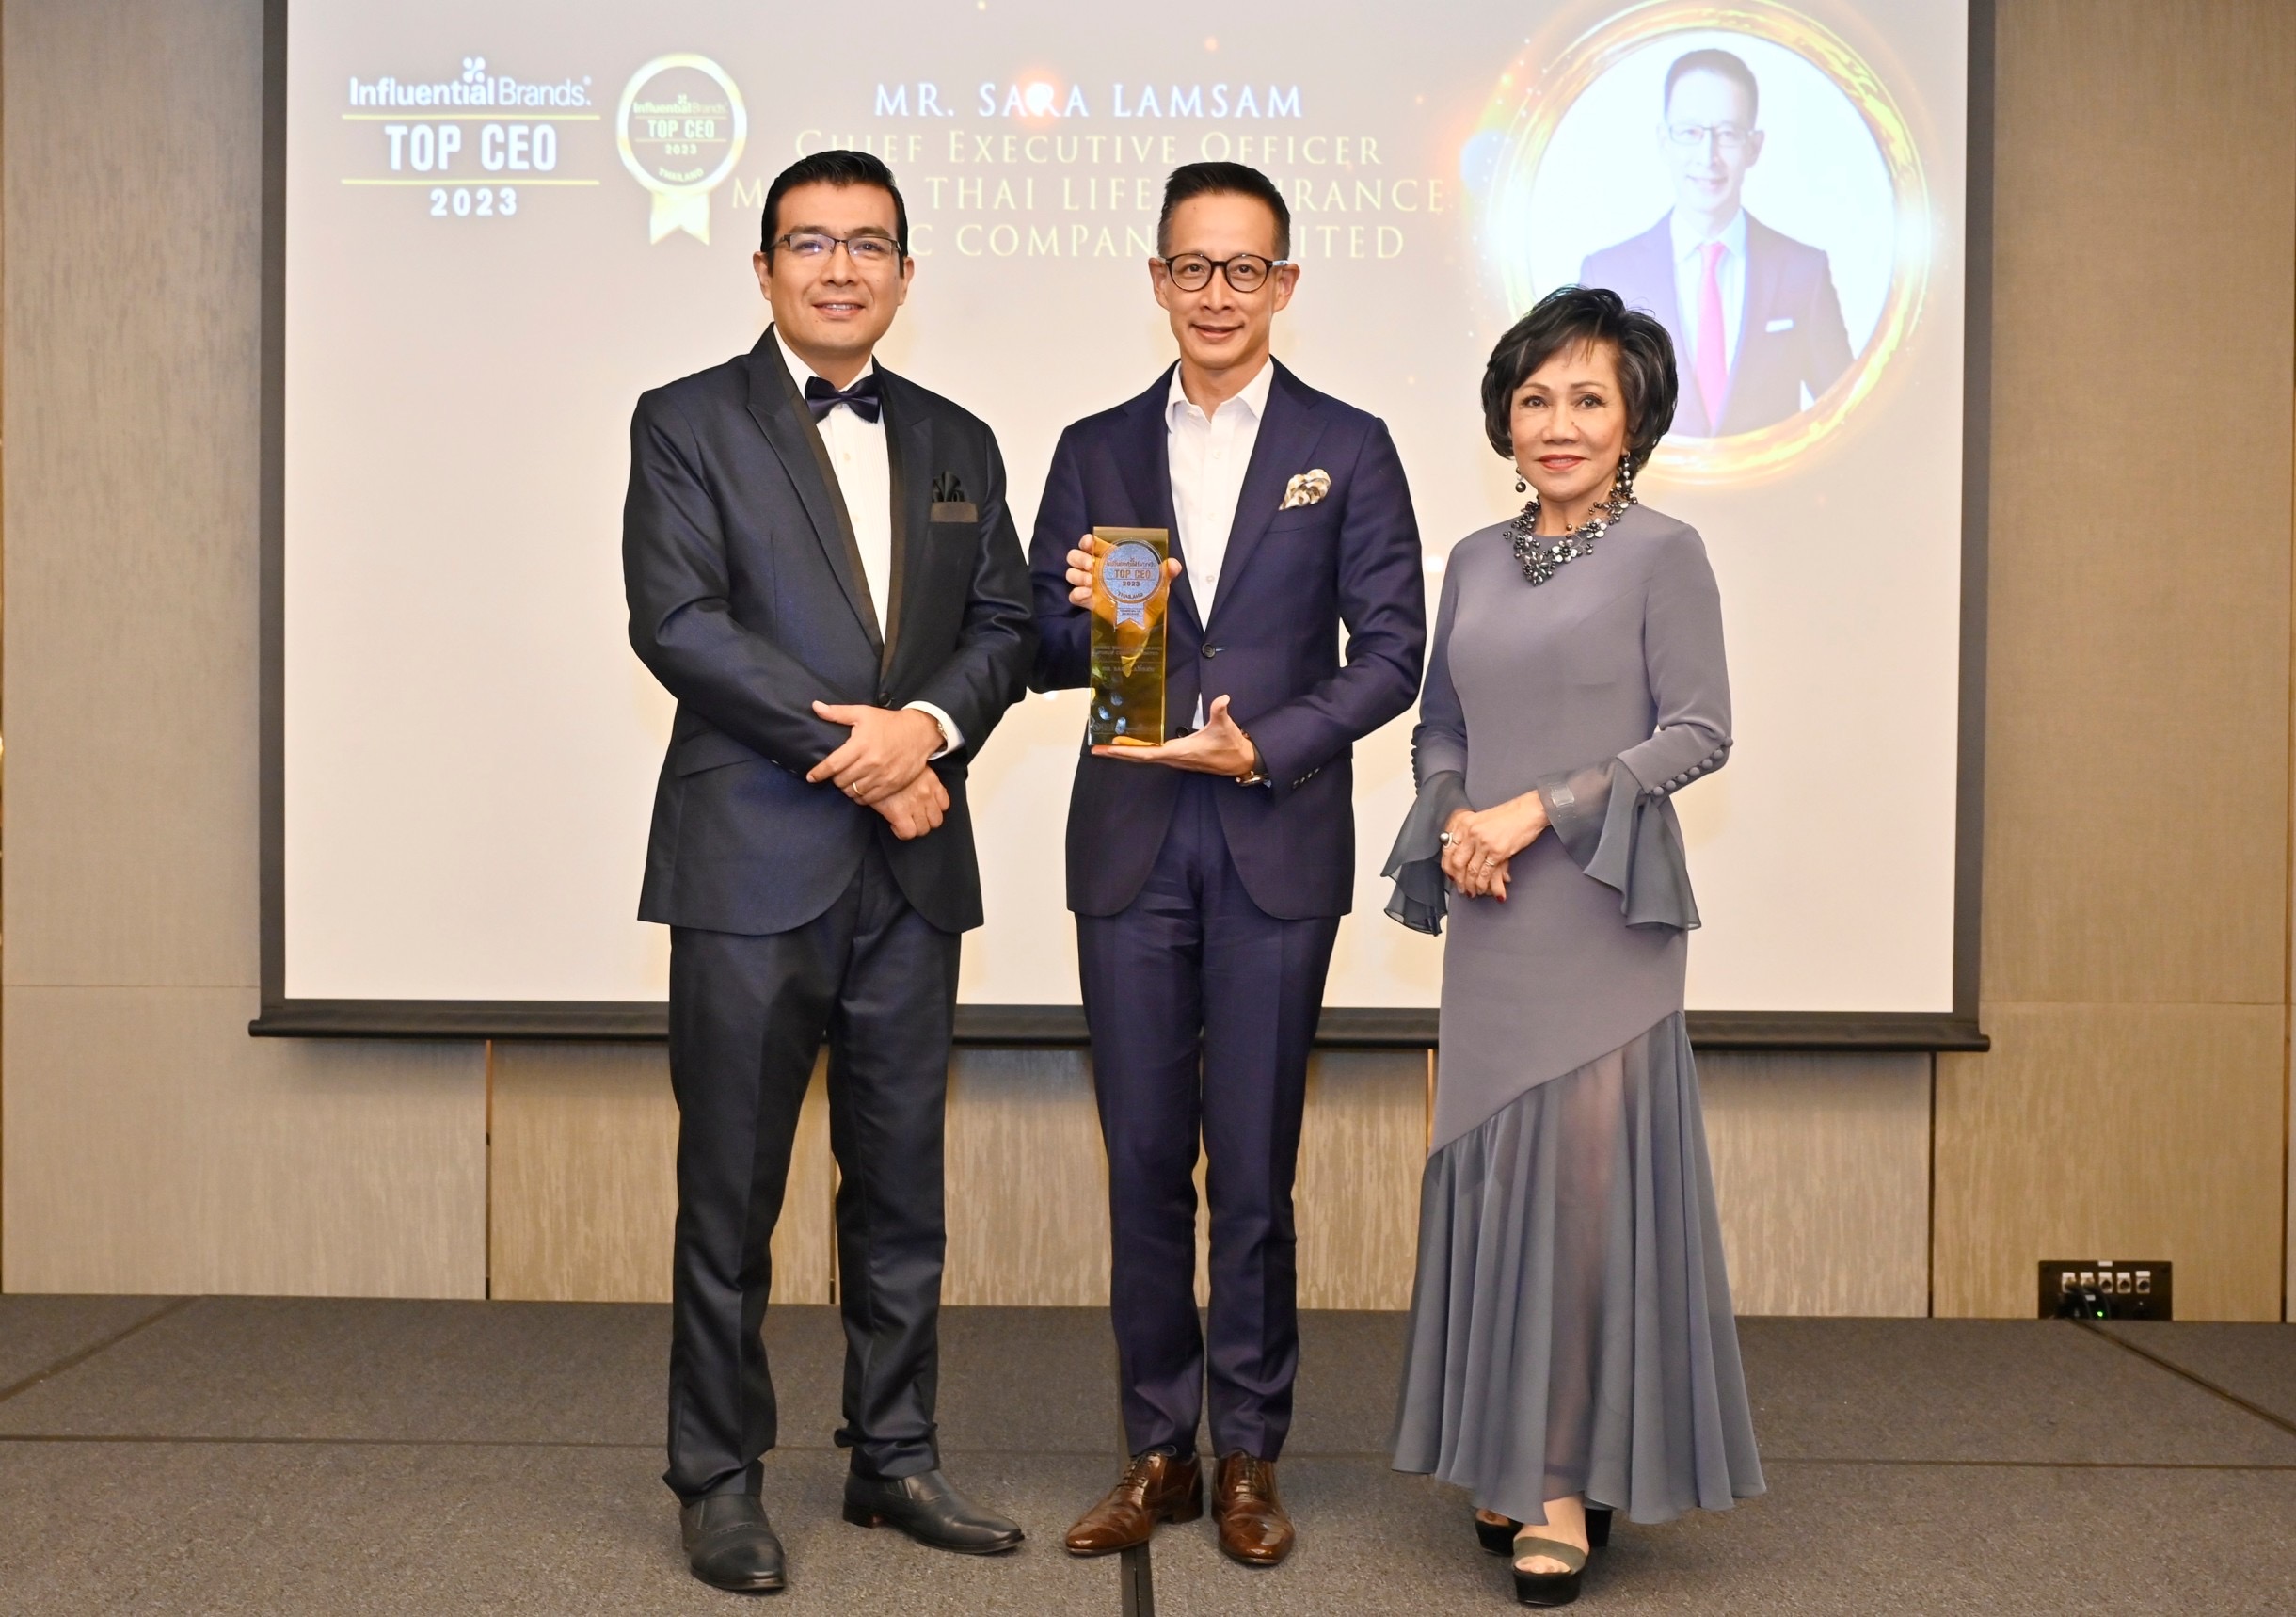 “สาระ ล่ำซำ” รับรางวัลเกียรติยศ TOP CEO (THAILAND) 2023 ต่อเนื่องเป็นปีที่ 3